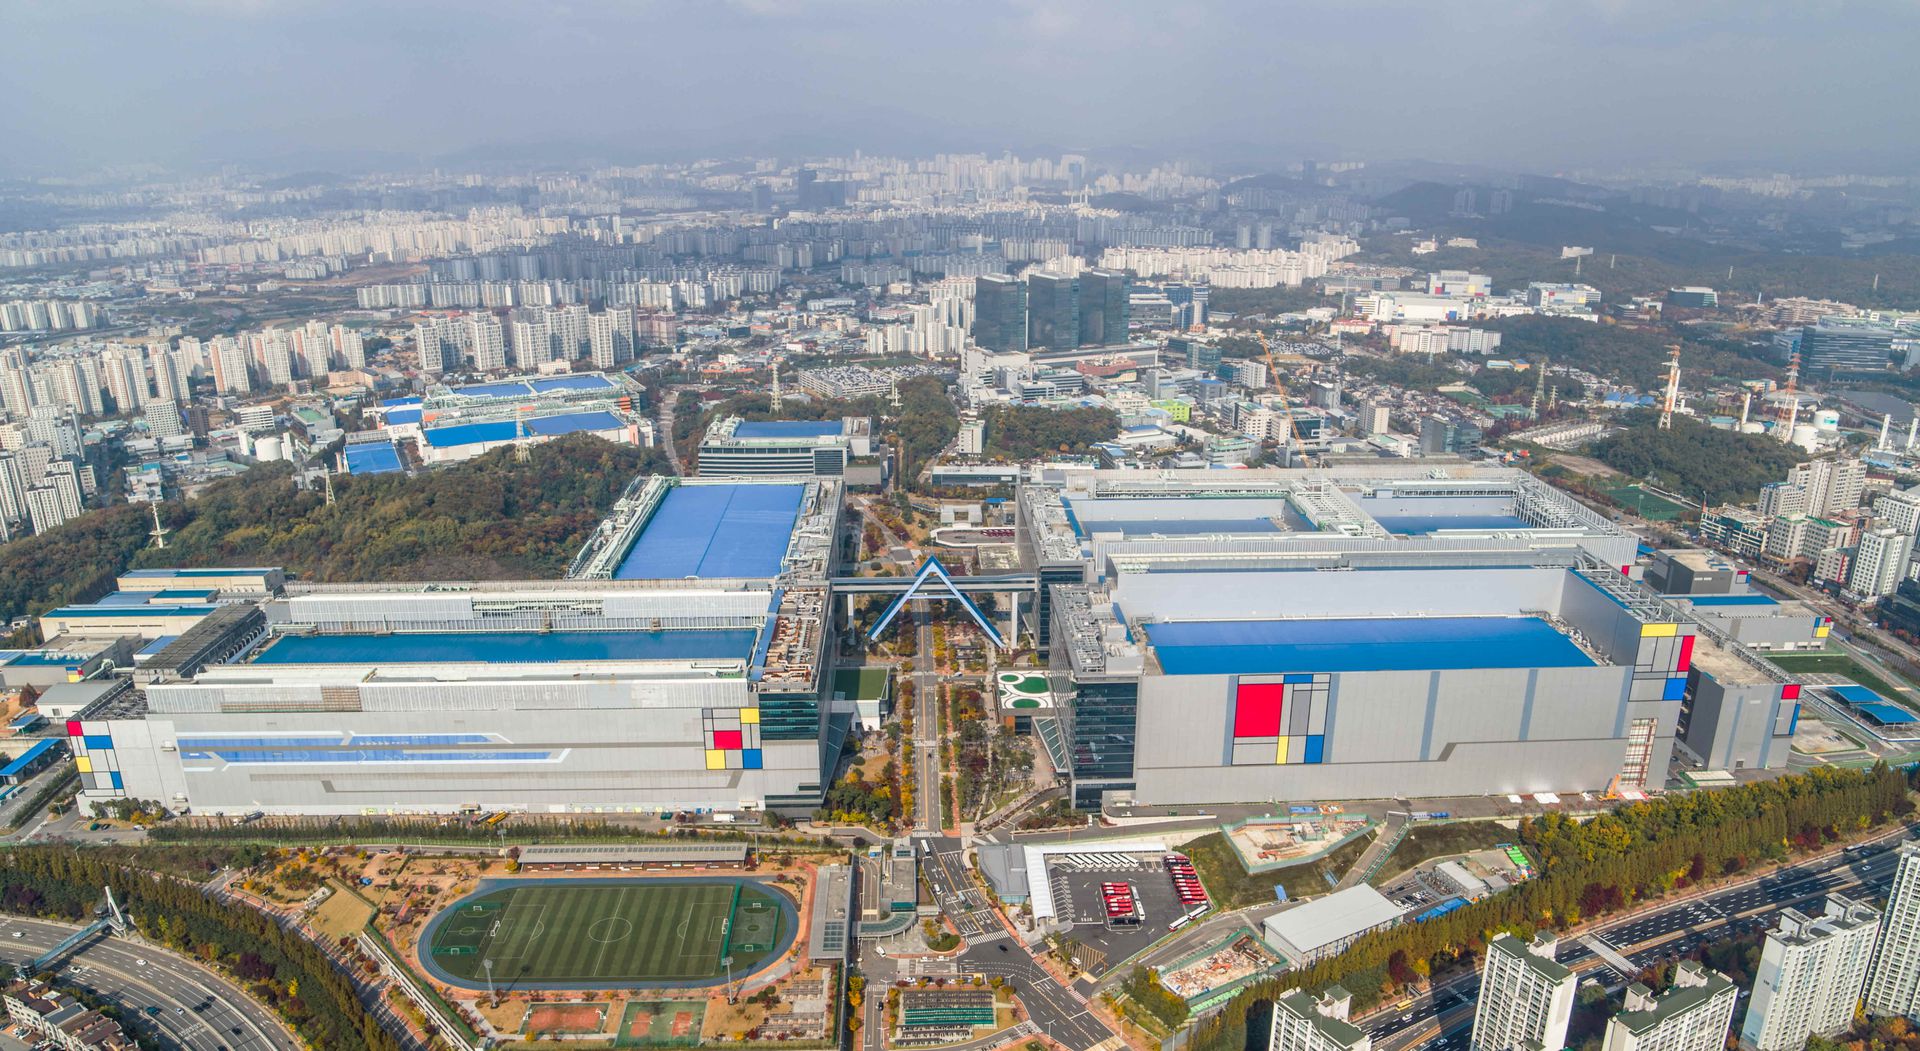 Samsung першим починає виробництво 3 нм чипів: вони матимуть більшу продуктивність і менше енергоспоживання